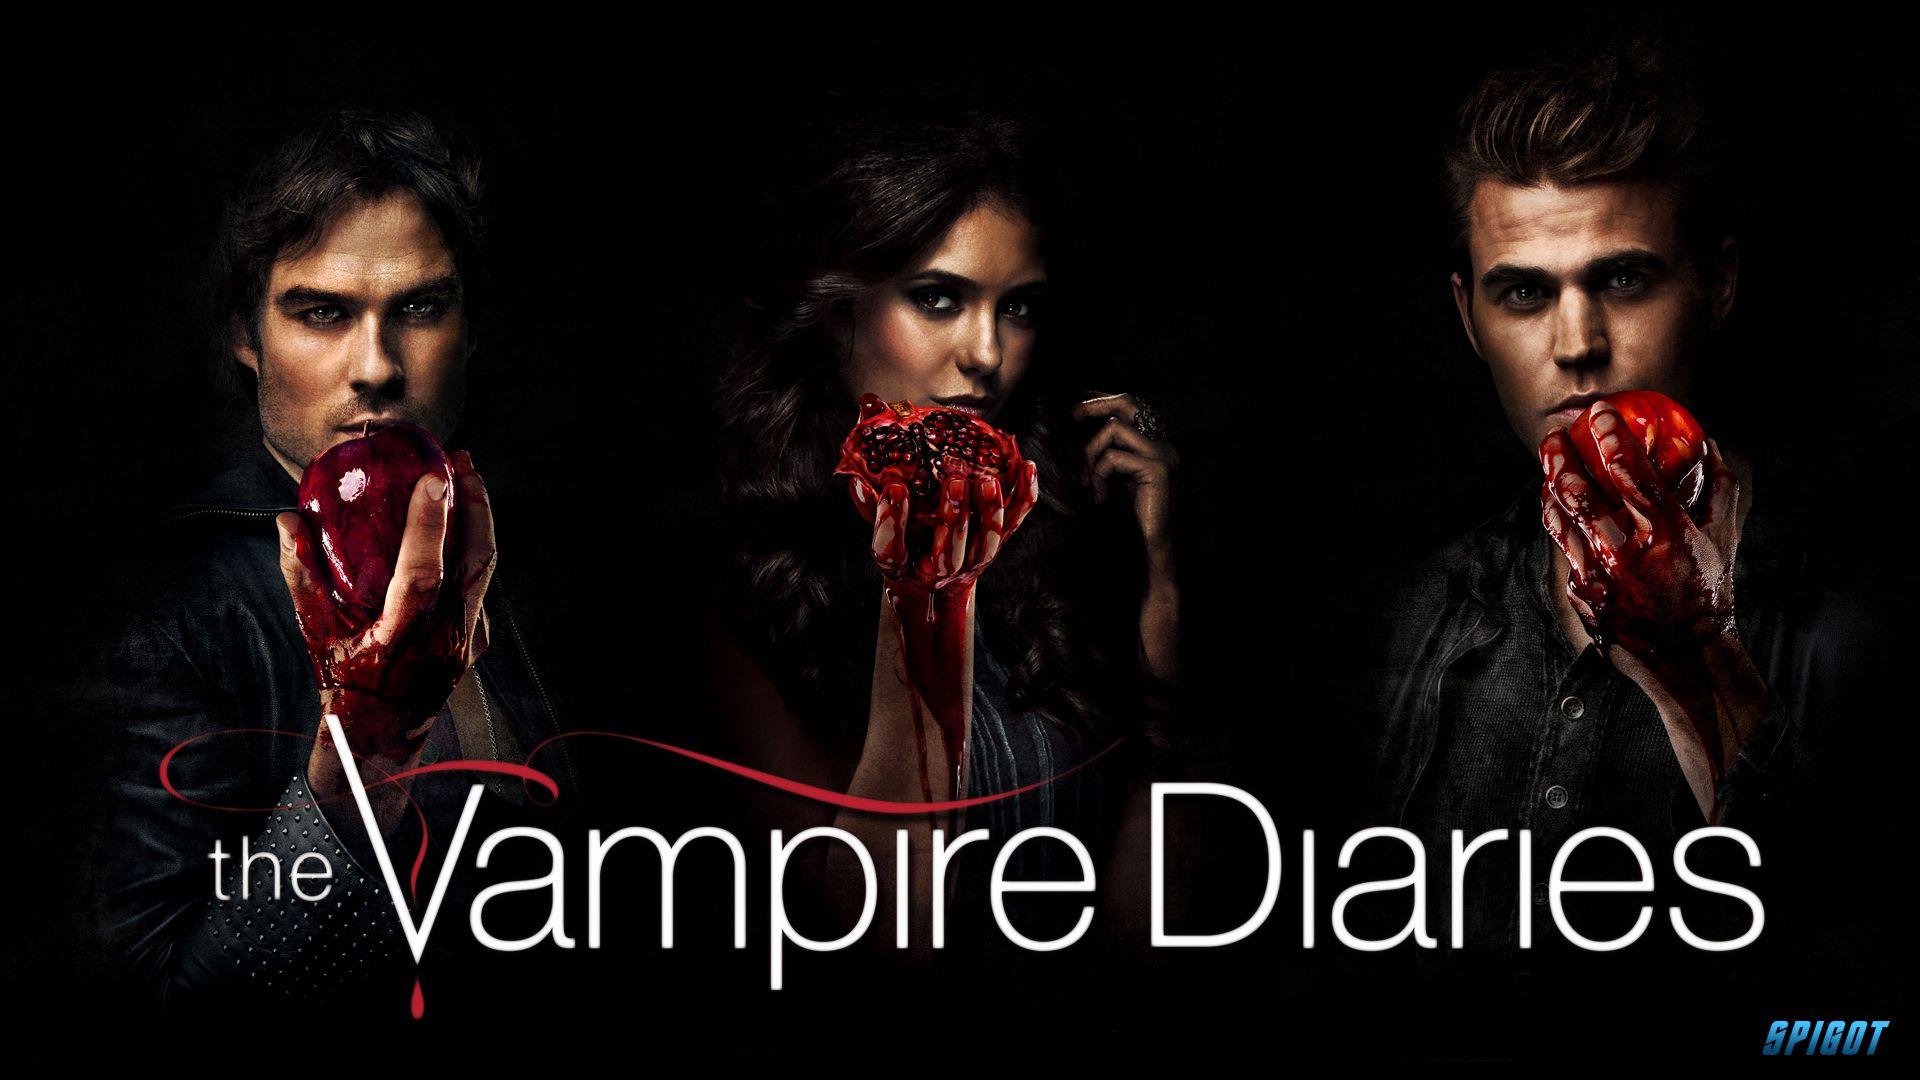 The Vampire Diaries. The Vampire Diaries